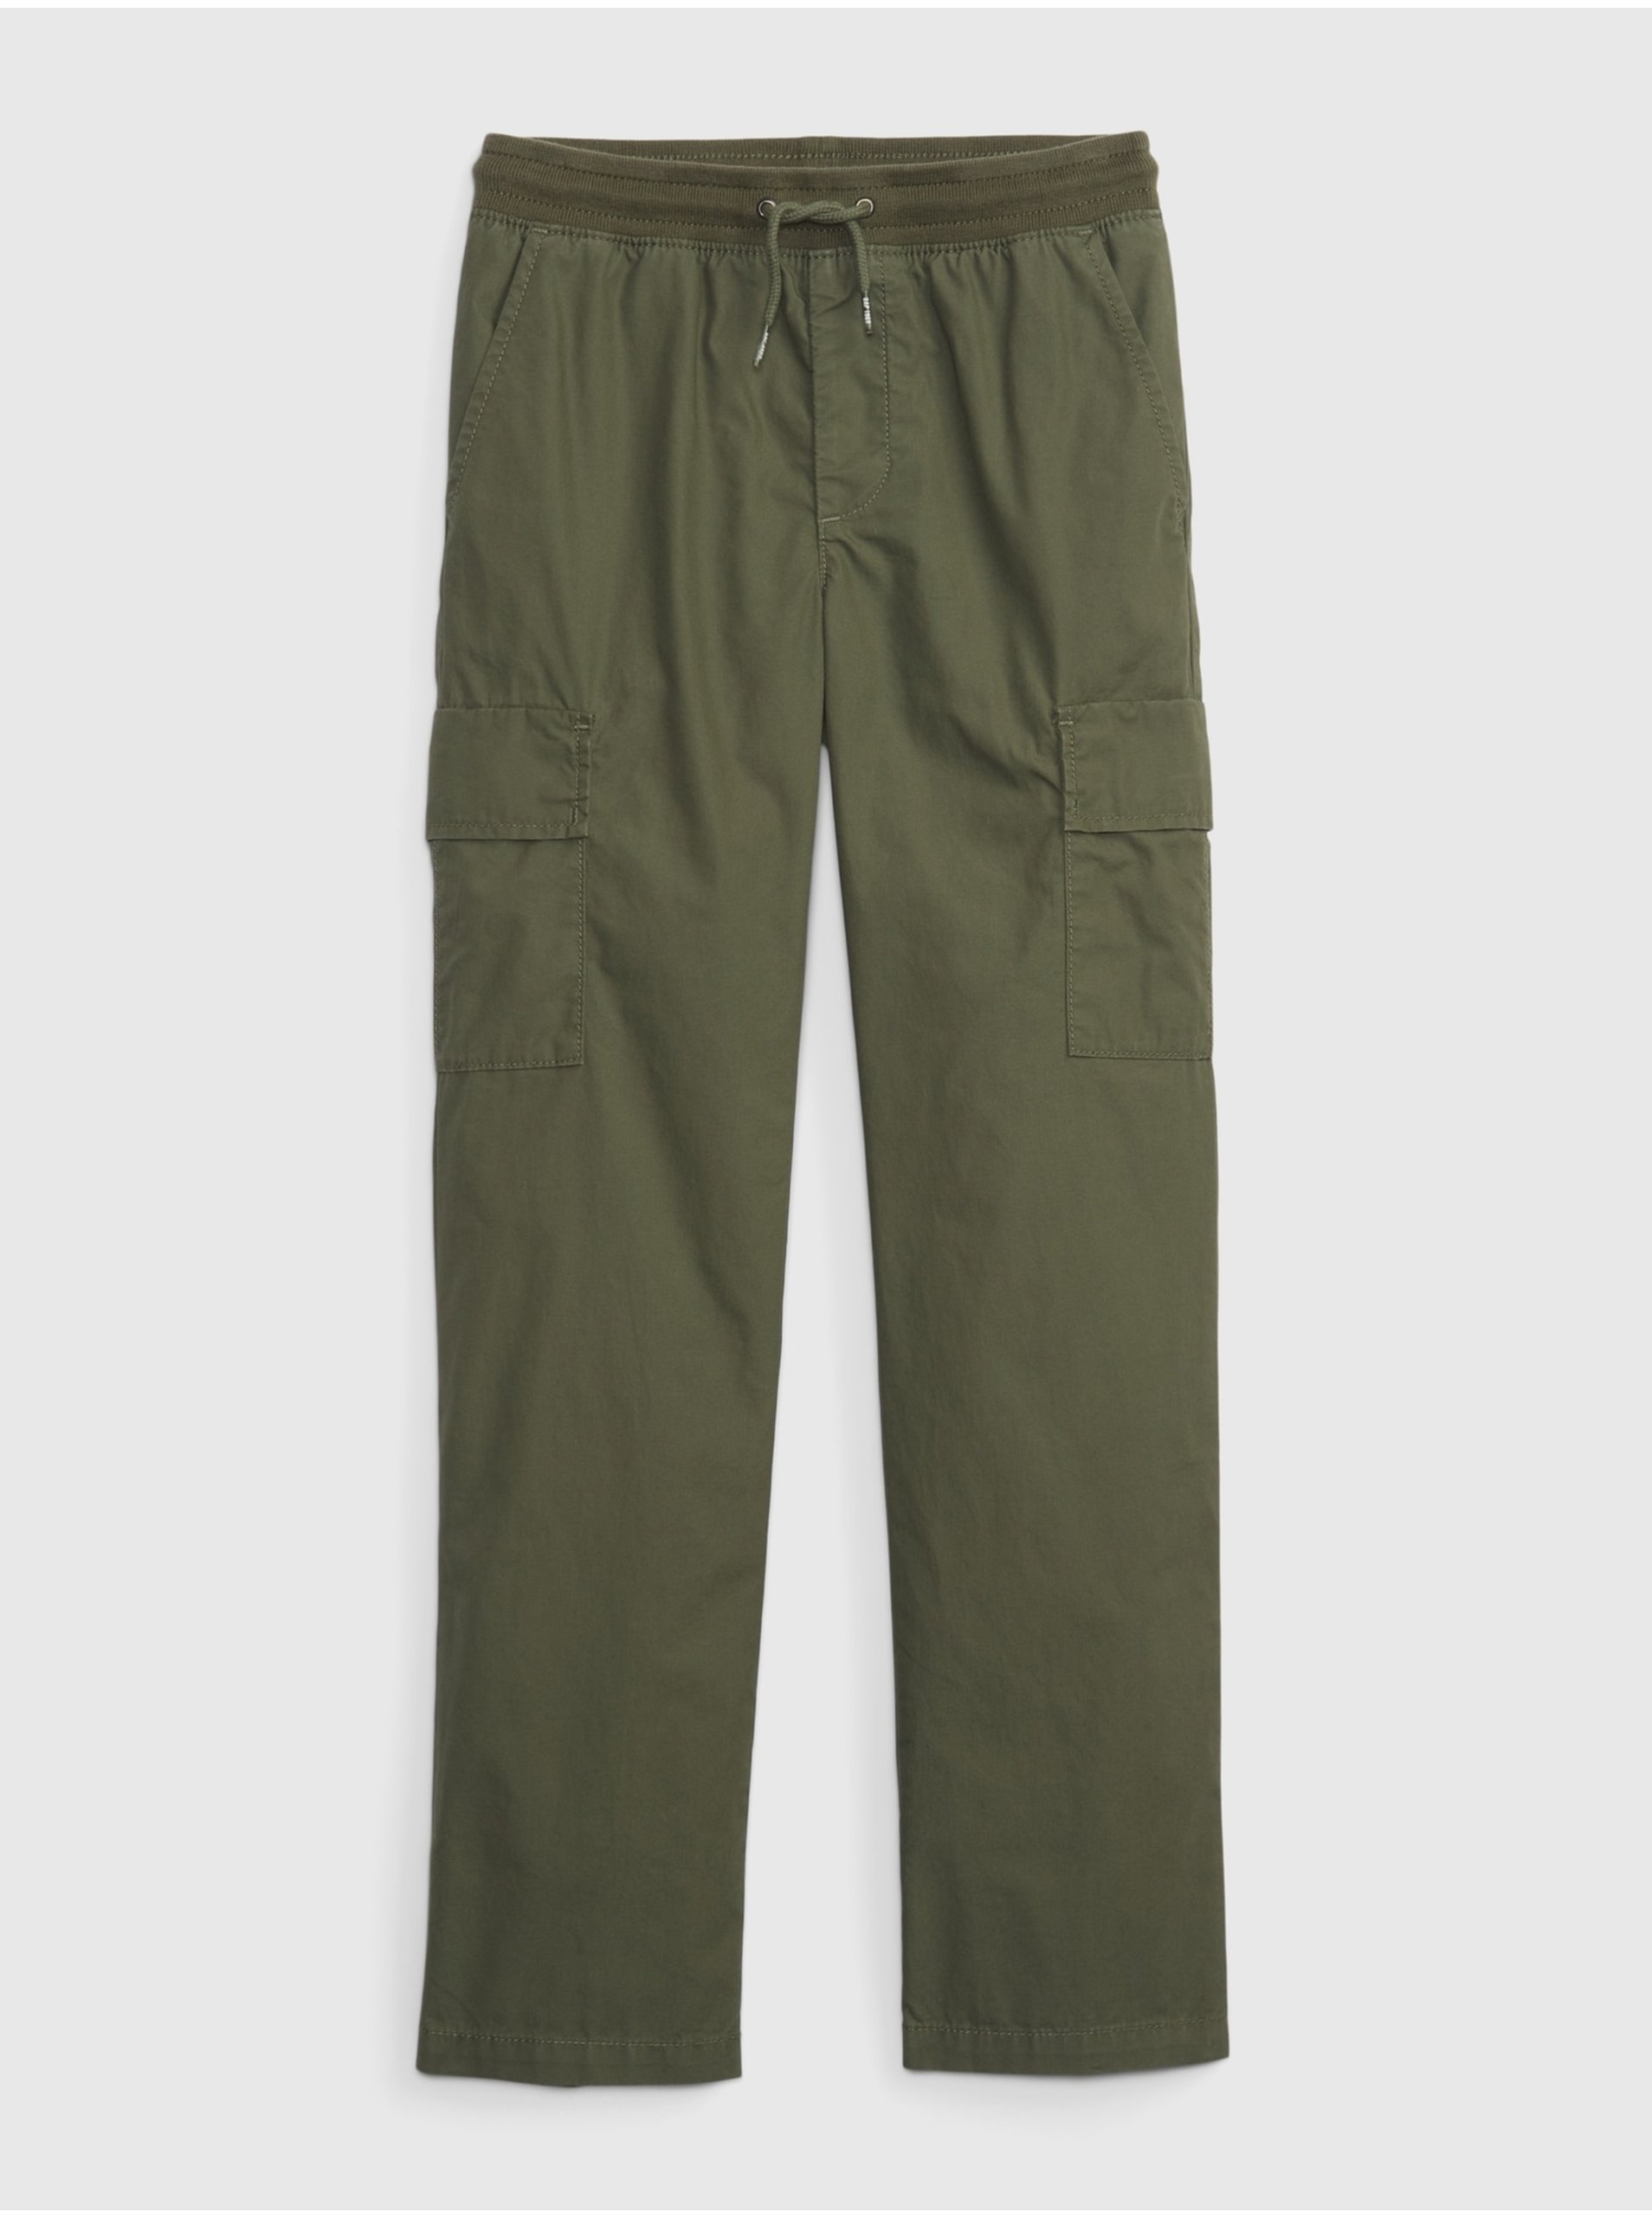 Lacno Zelené chlapčenské nohavice kapasáče GAP